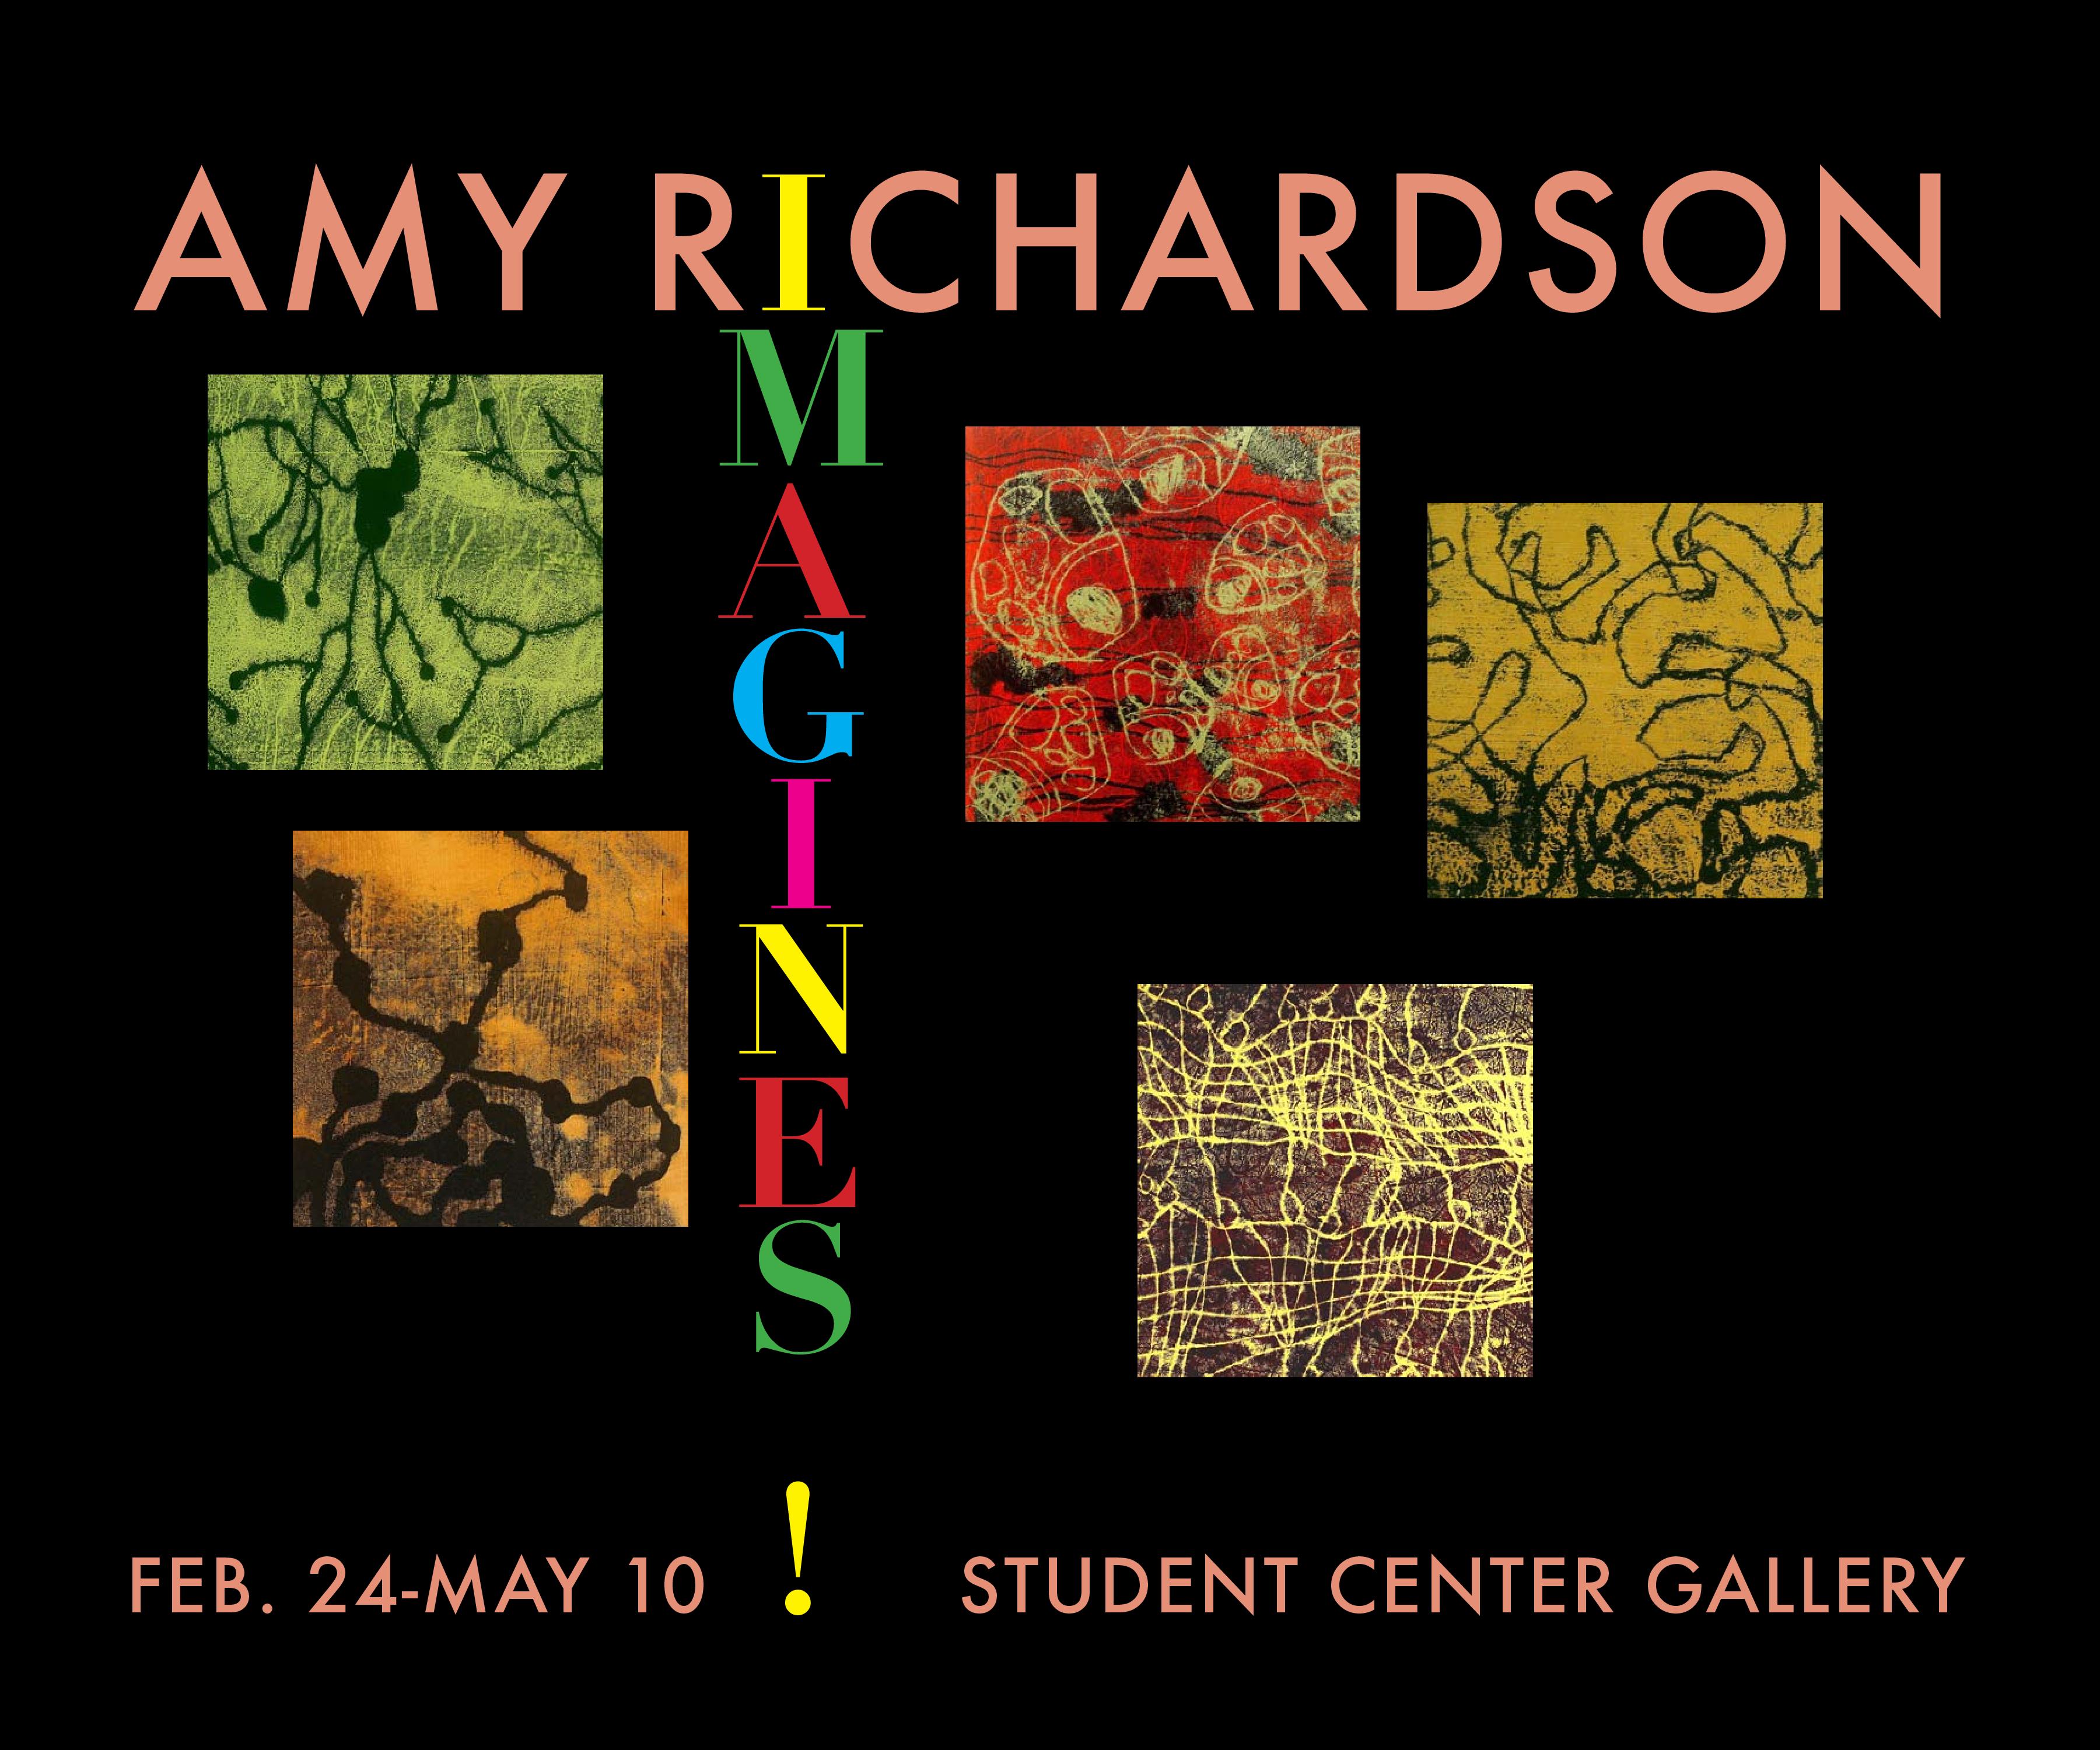 Amy Richardson Exhibit - Opening Reception